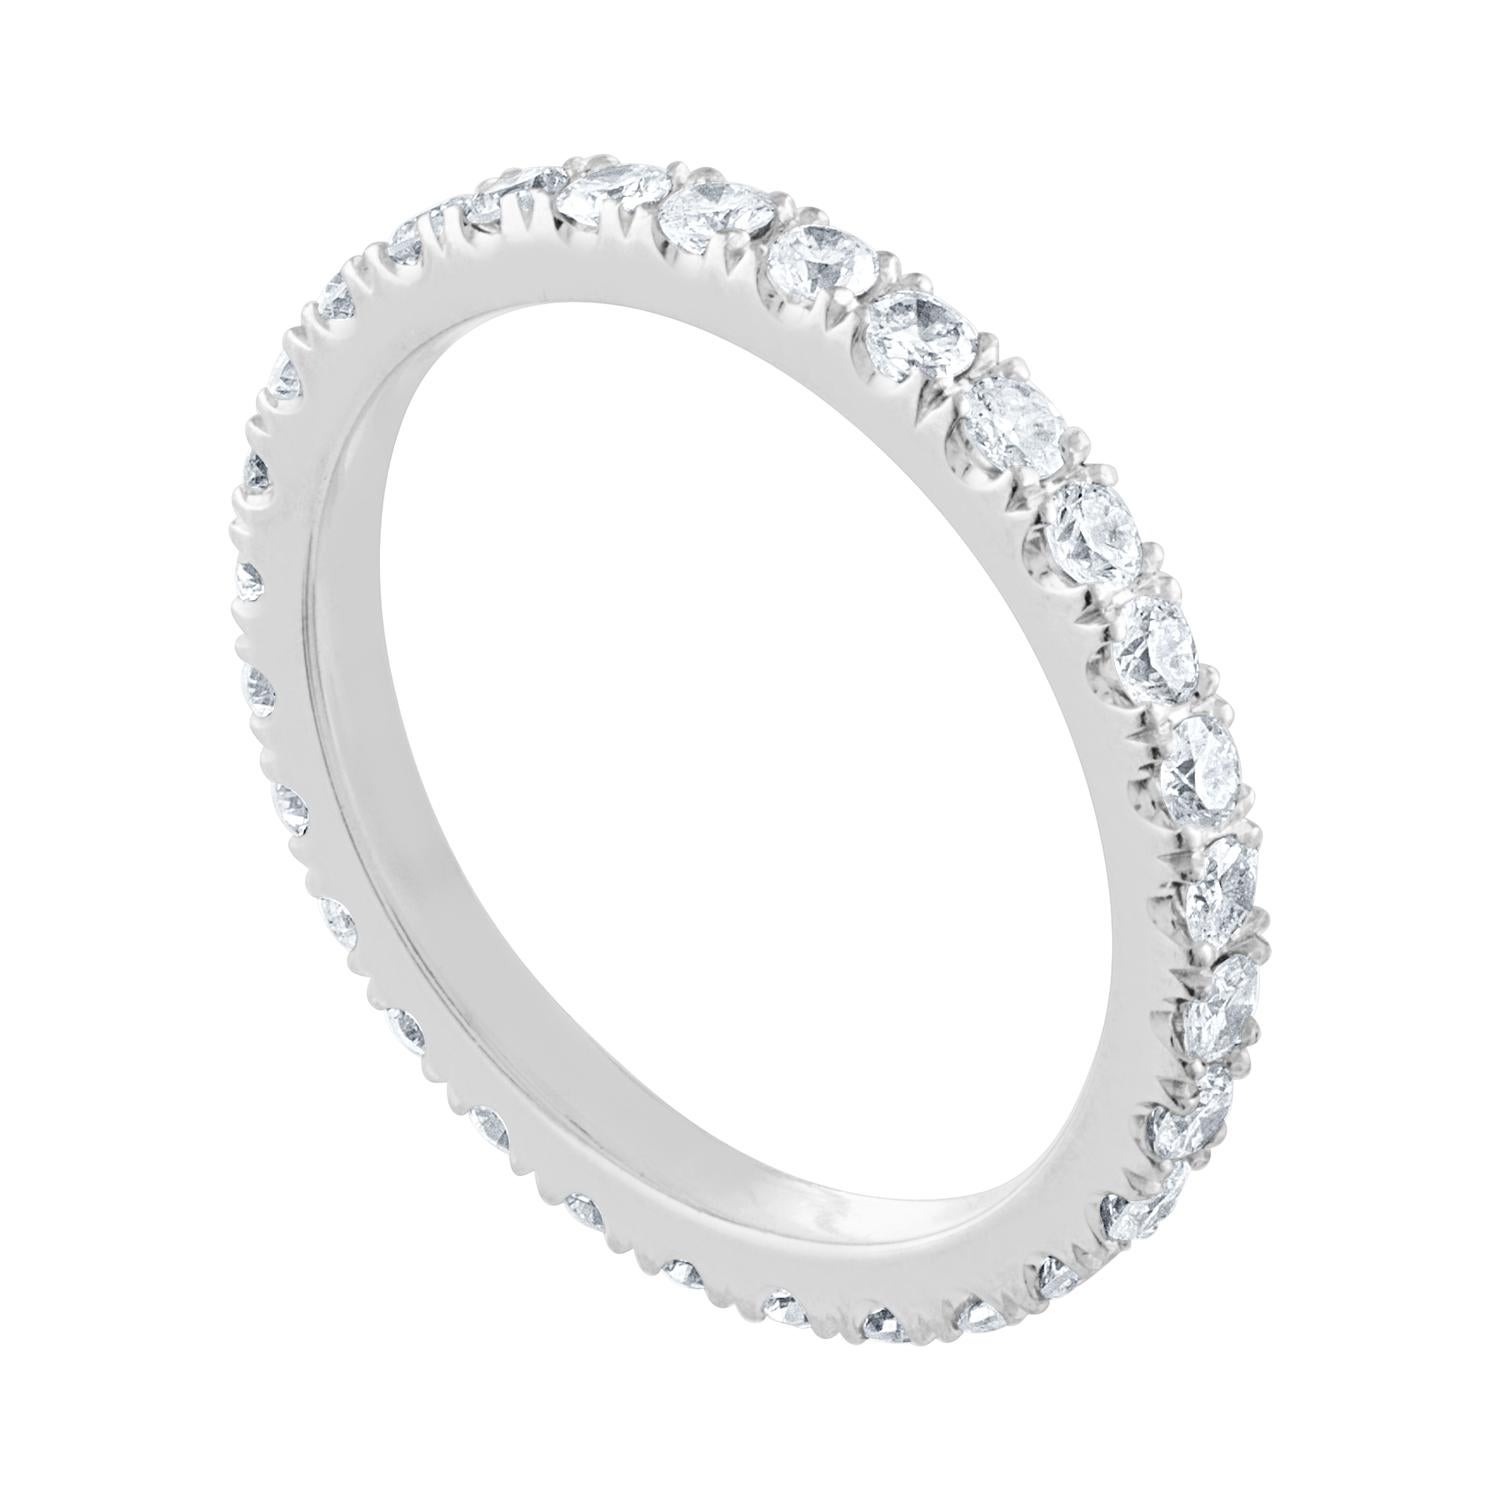 L'anneau est en platine
Il y a 1.00 Carats en Diamants G/H SI
Les diamants sont ronds et brillants
L'anneau pèse 3,0 grammes
La bague est une taille 6.00, pas de taille importante.